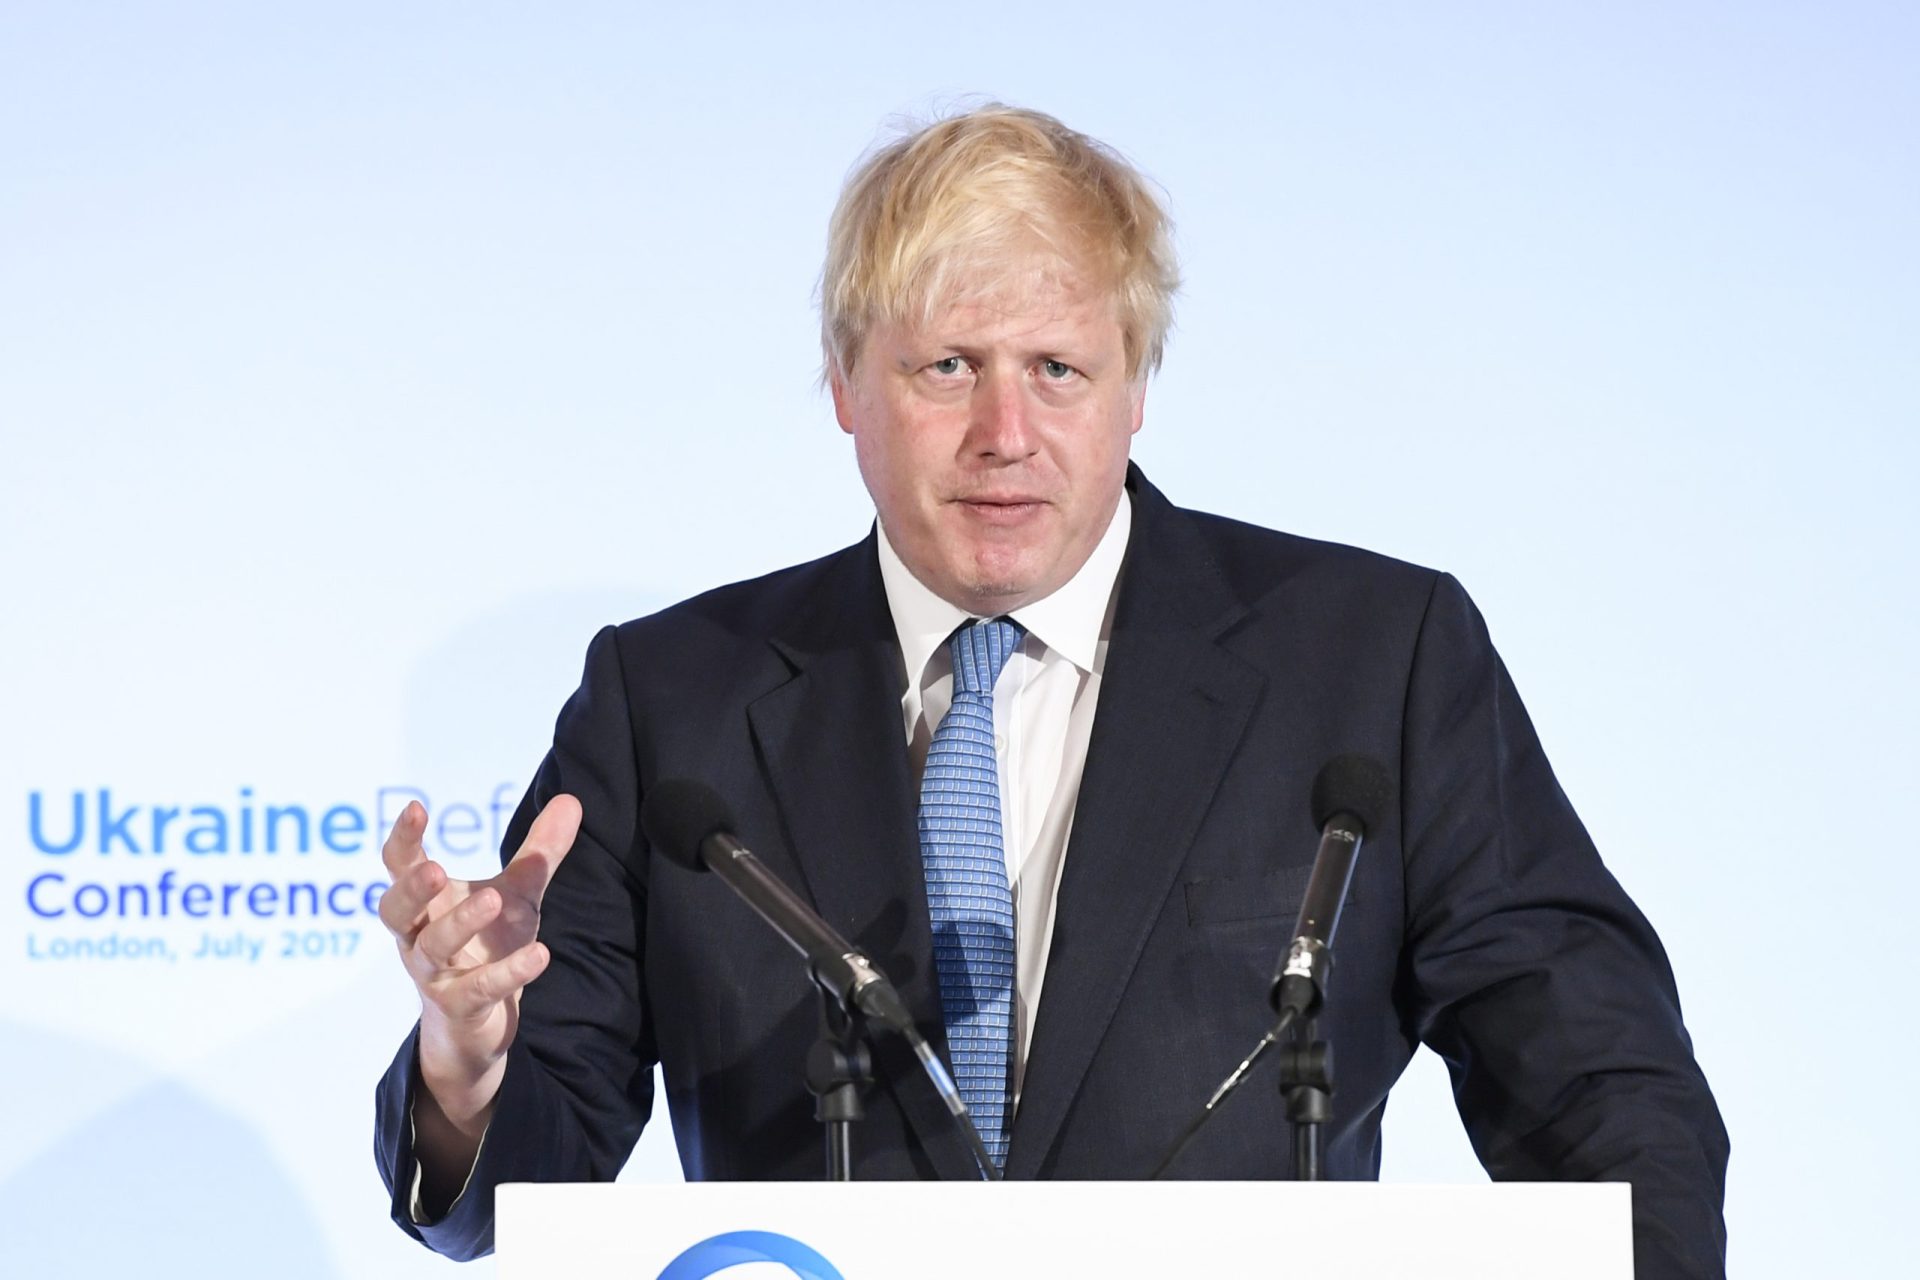 Reino Unido. Boris Johnson acusado de corrupção